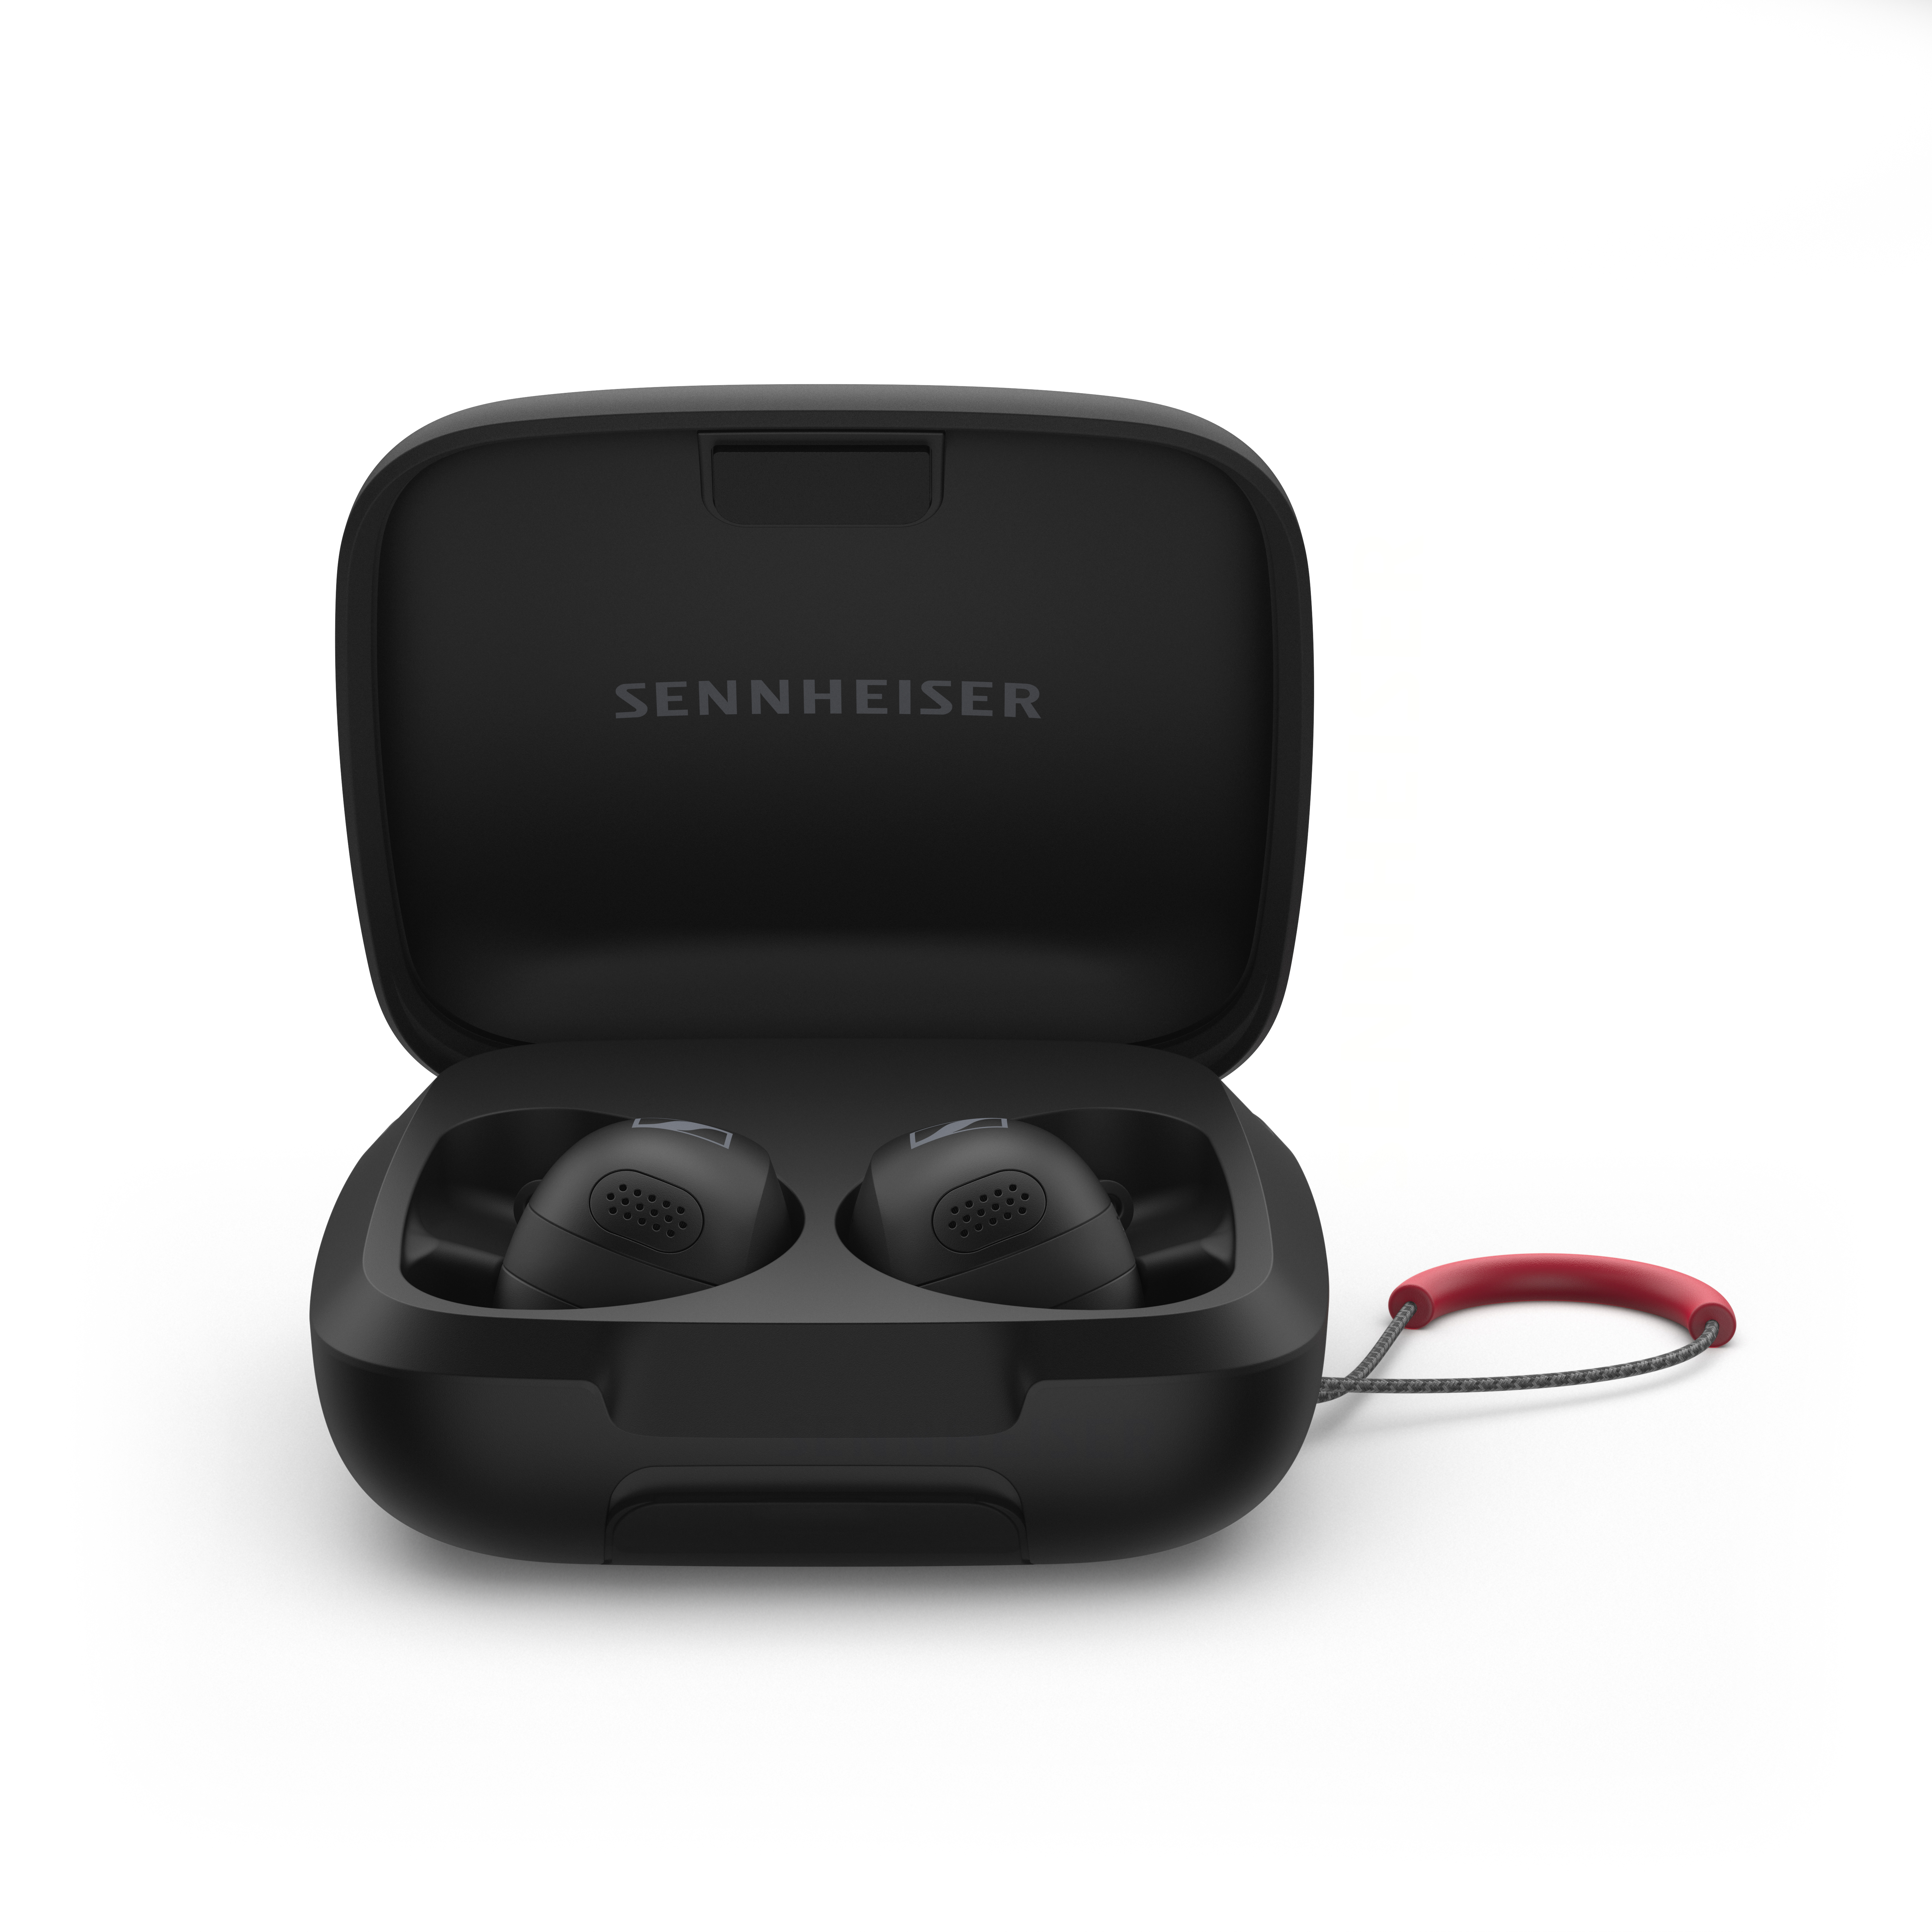 New Sennheiser Headphone Releases